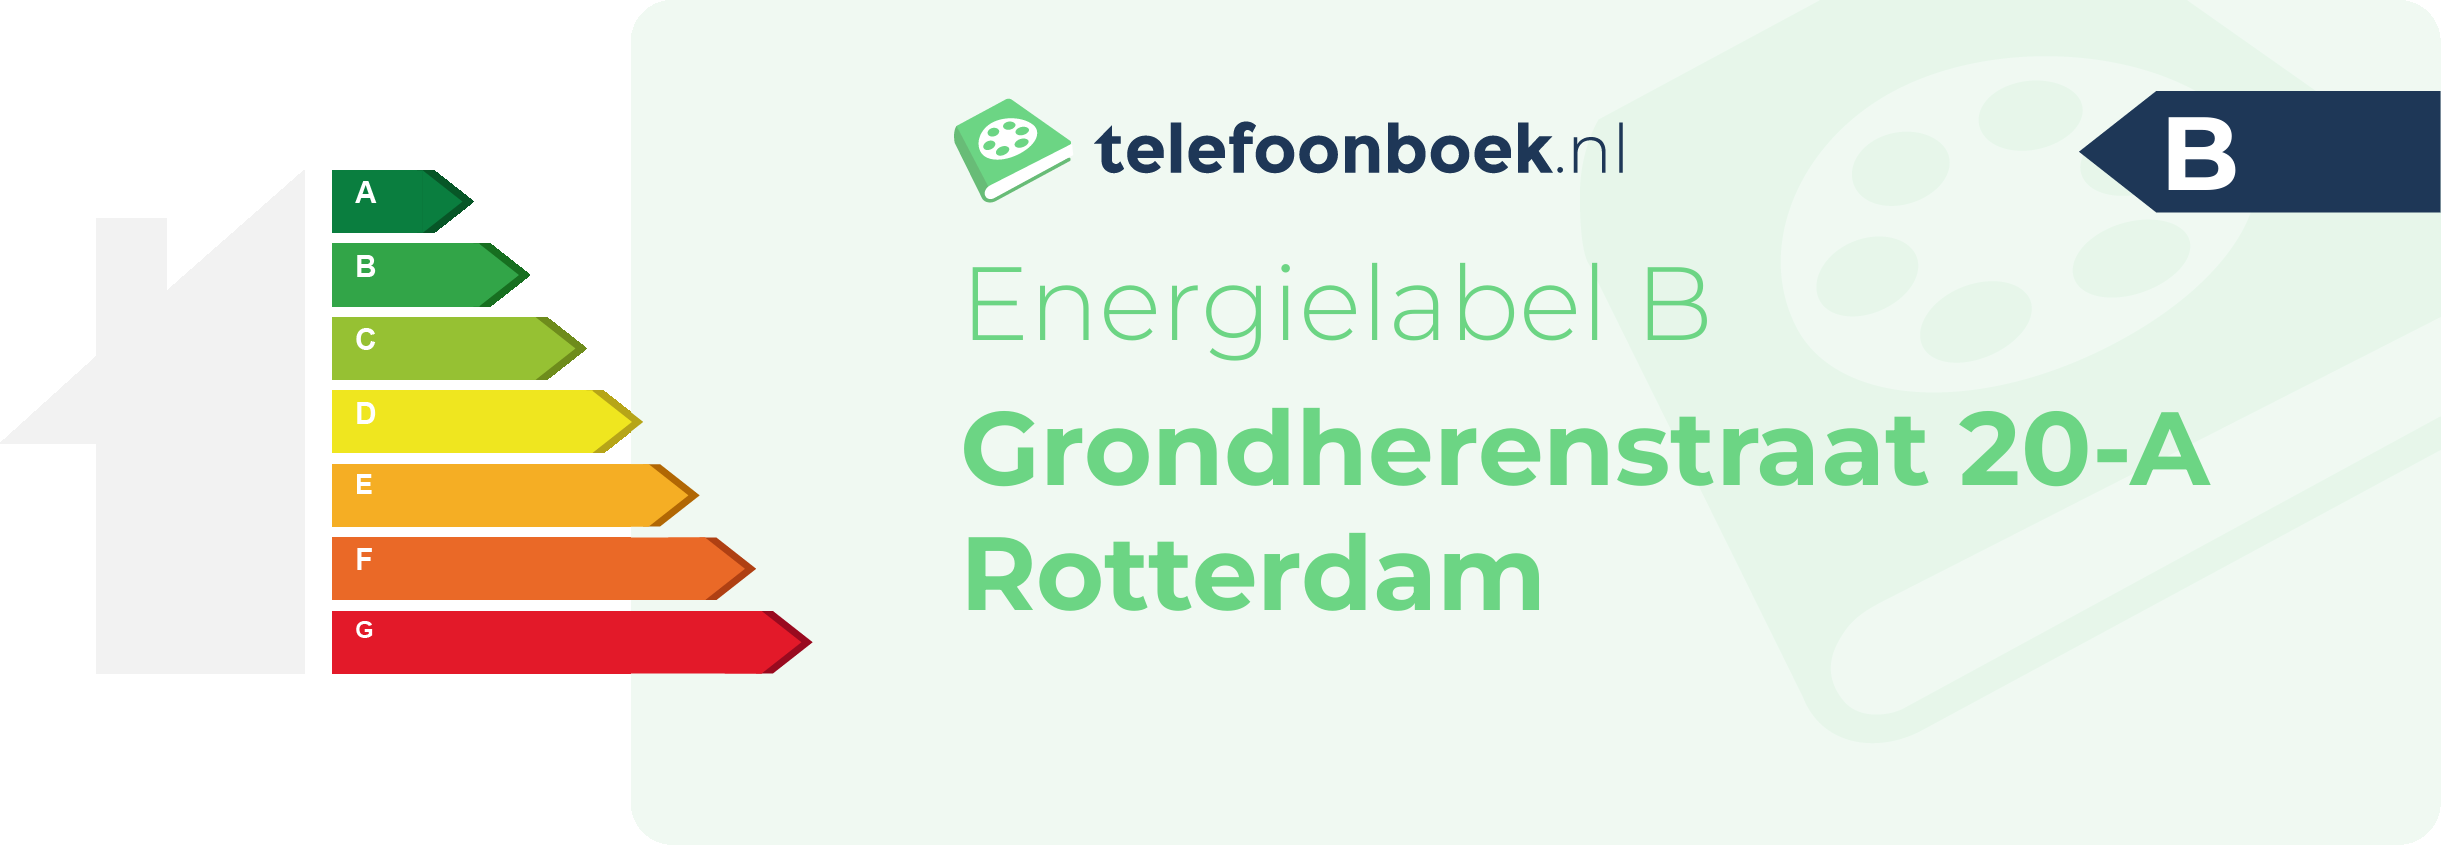 Energielabel Grondherenstraat 20-A Rotterdam